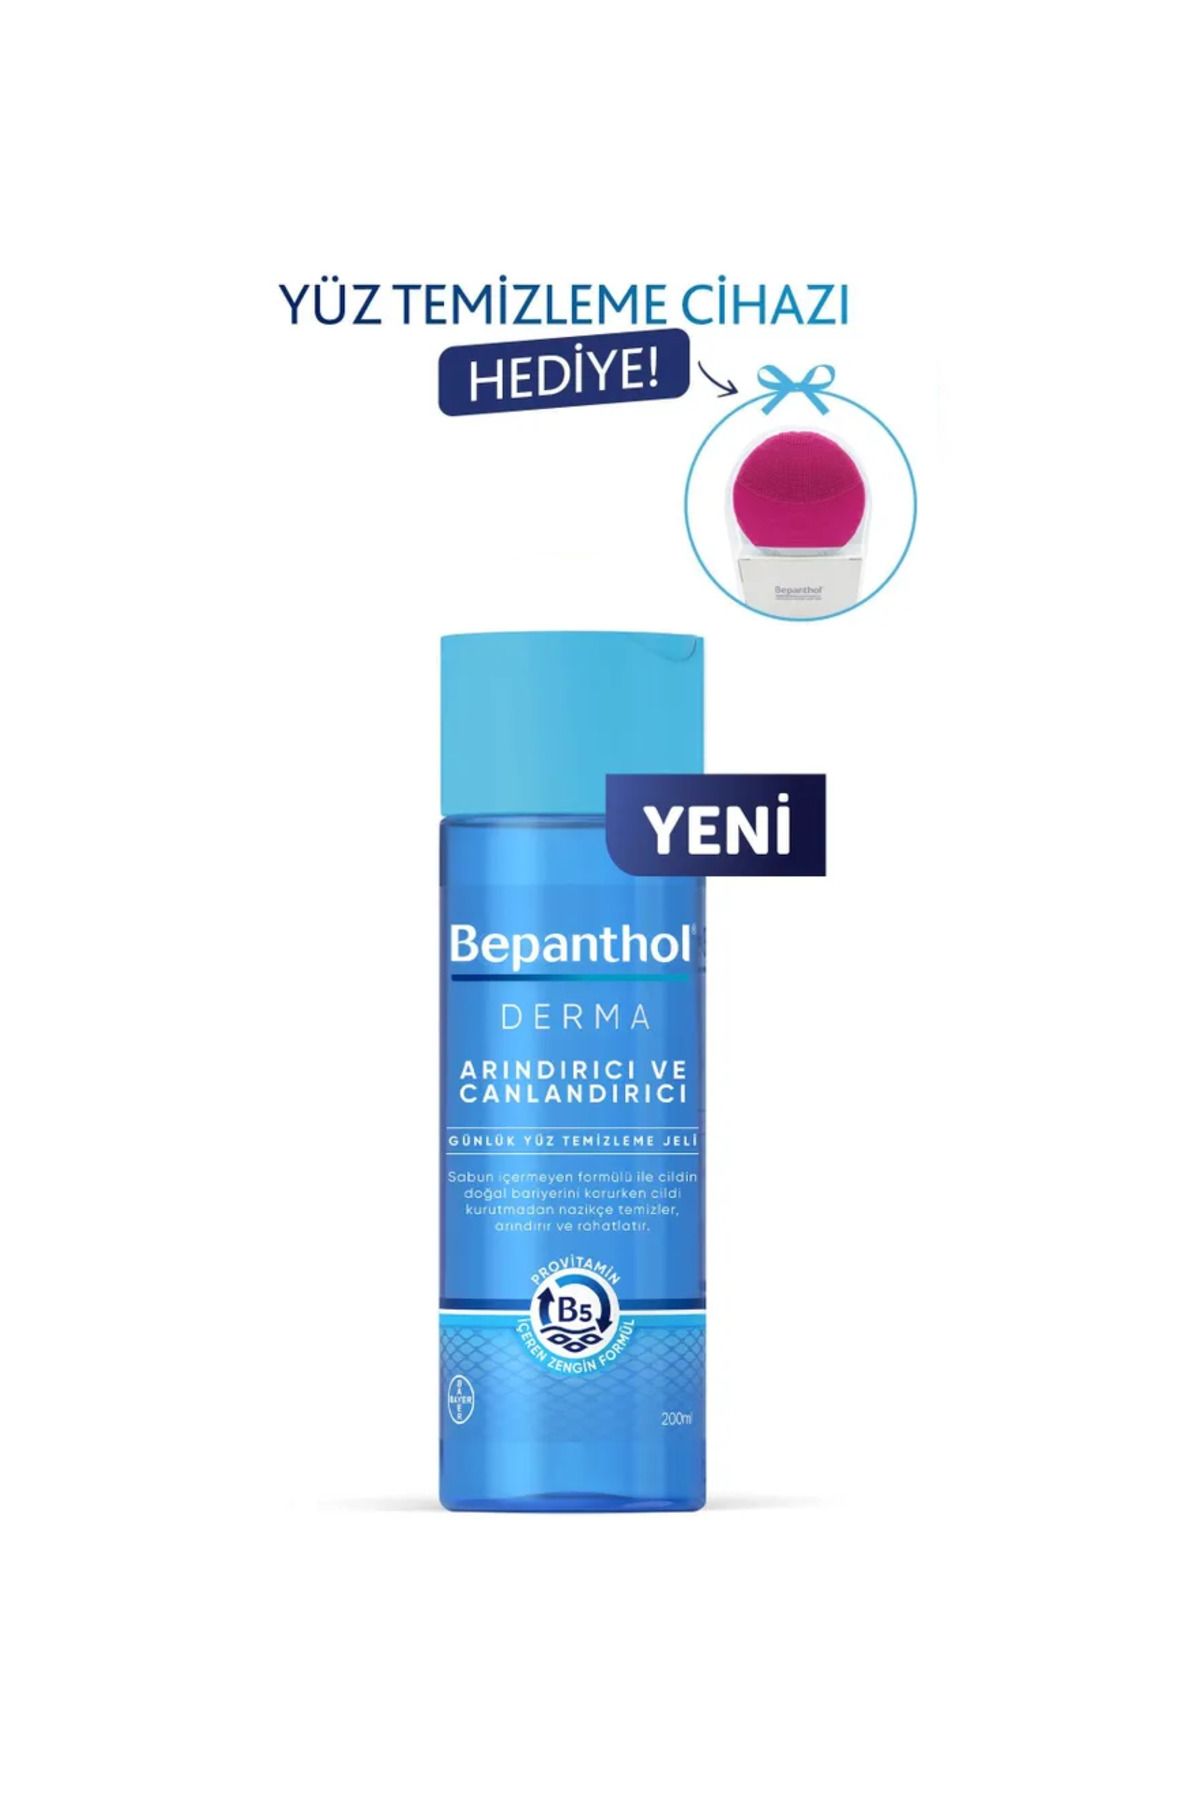 Bepanthol Derma Arındırıcı & Canlandırıcı Günlük Yüz Temizleme Jeli + Makyaj Temizleme Cihazı